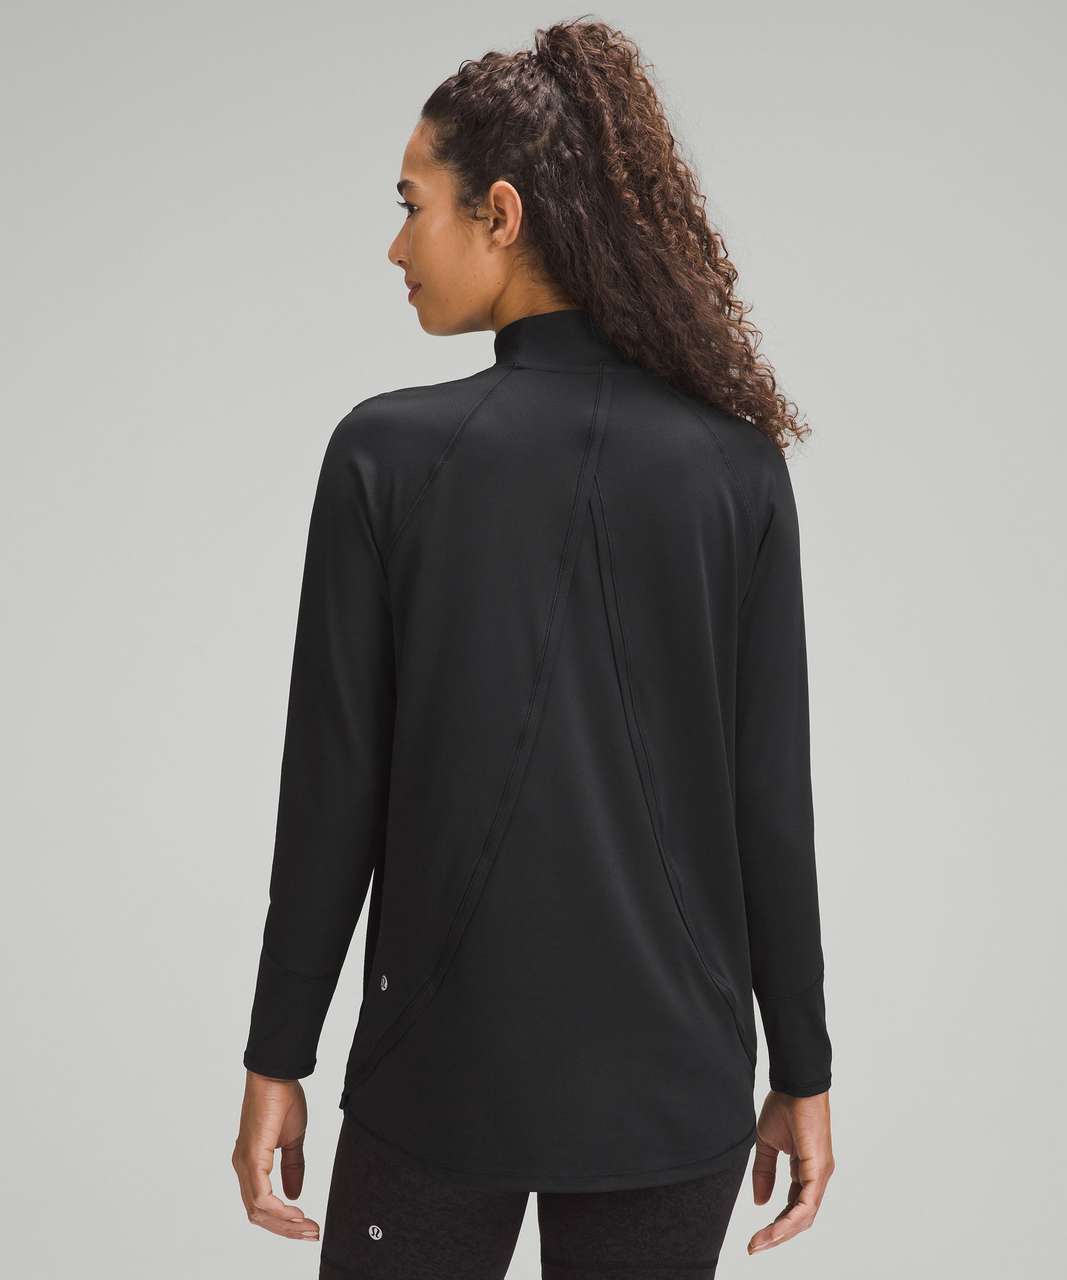 Lululemon High-Coverage Training Long-Sleeve Shirt - Black